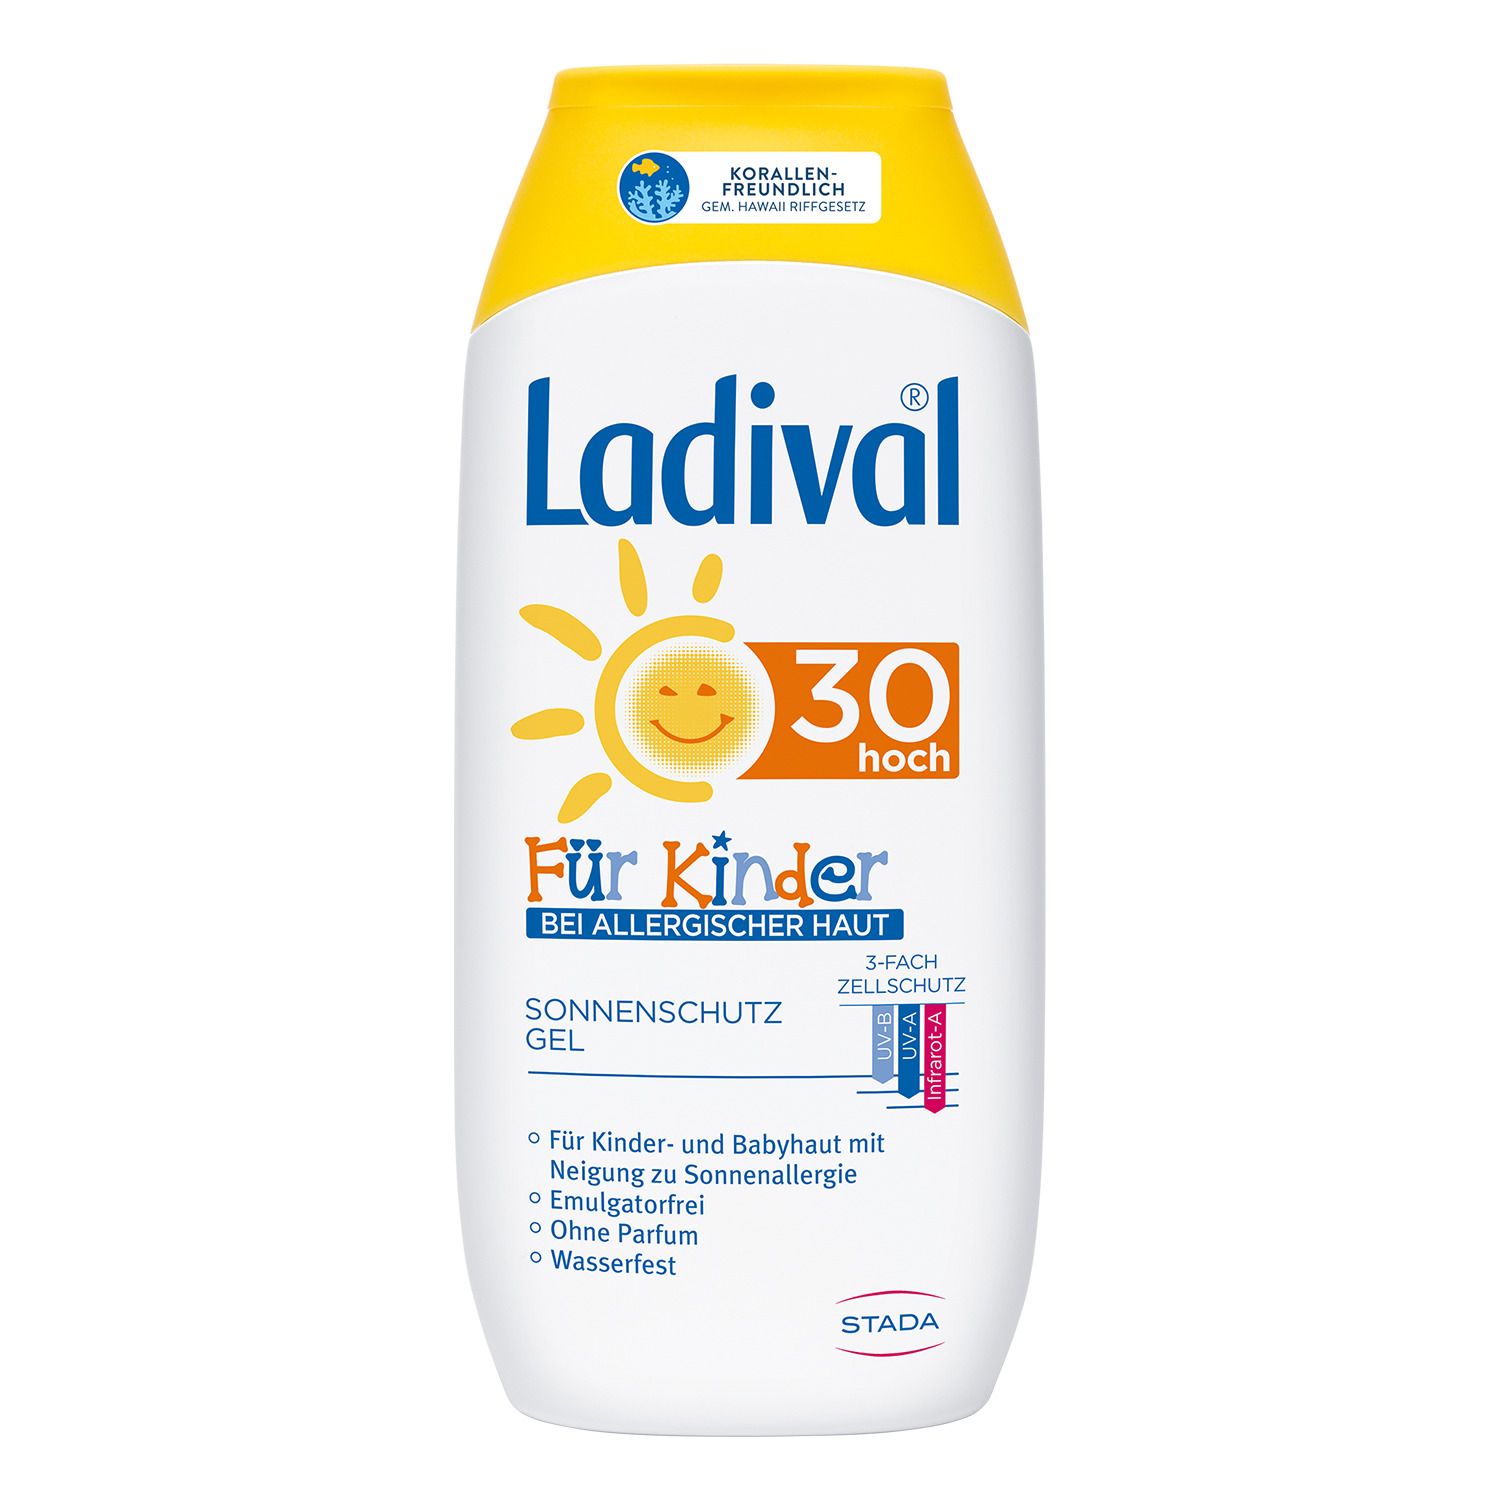 Ladival® Sonnenschutz Gel bei allergischer Haut für Kinder LSF 30 + Ladival Malbuch GRATIS